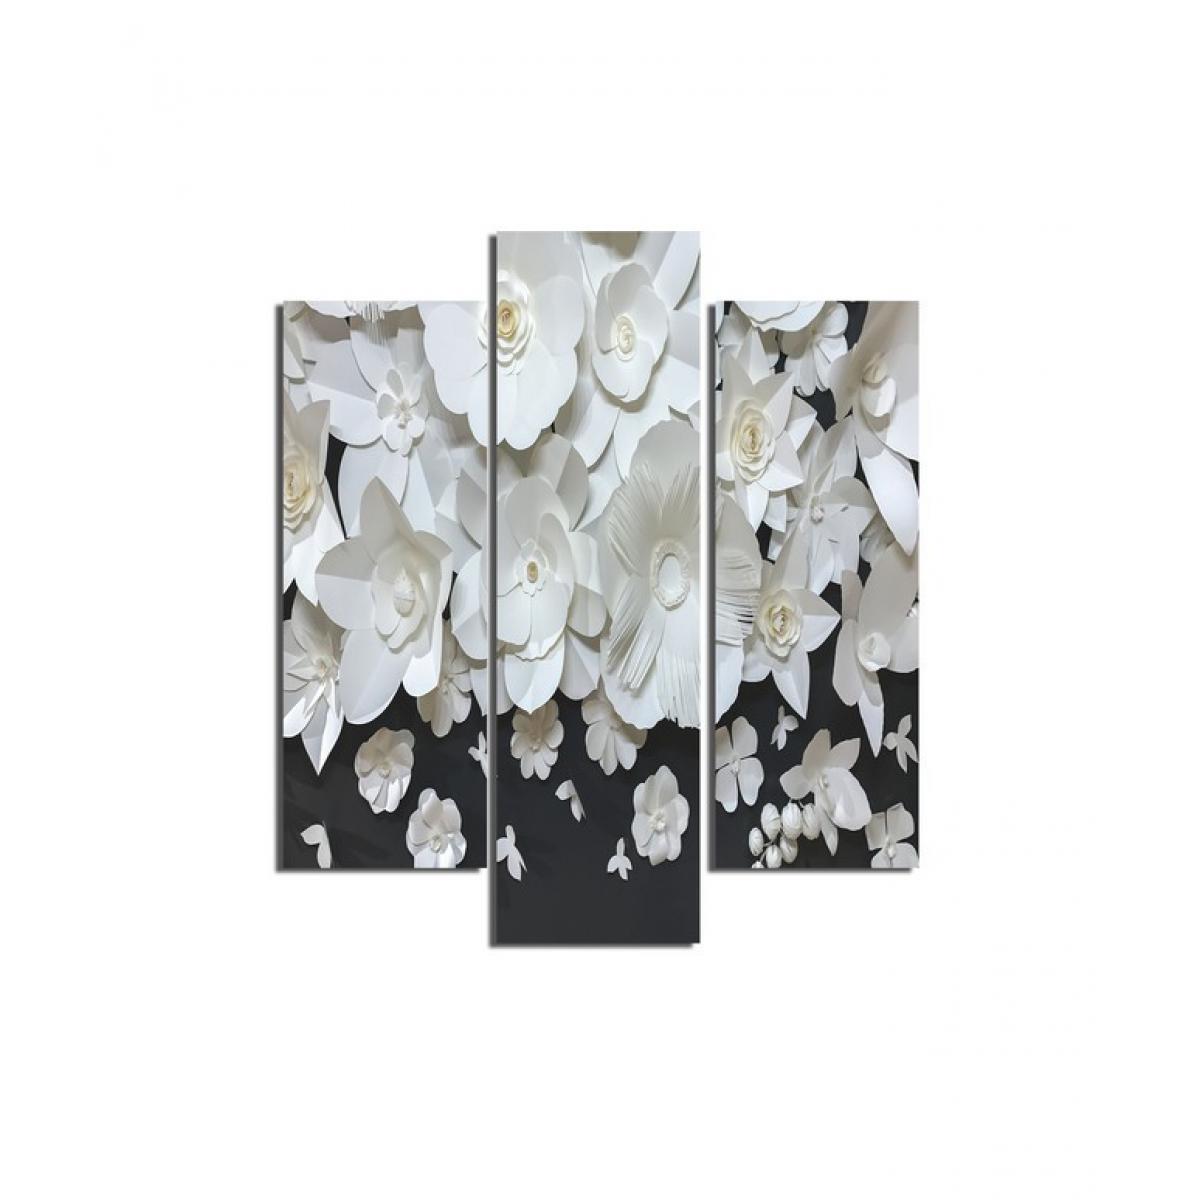 Homemania - HOMEMANIA Tableau Fleurs - 3 Pieces - Nature - pour Salon, Chambre - Multicouleur en MDF, 57 x 0,3 x 60 cm - Tableaux, peintures